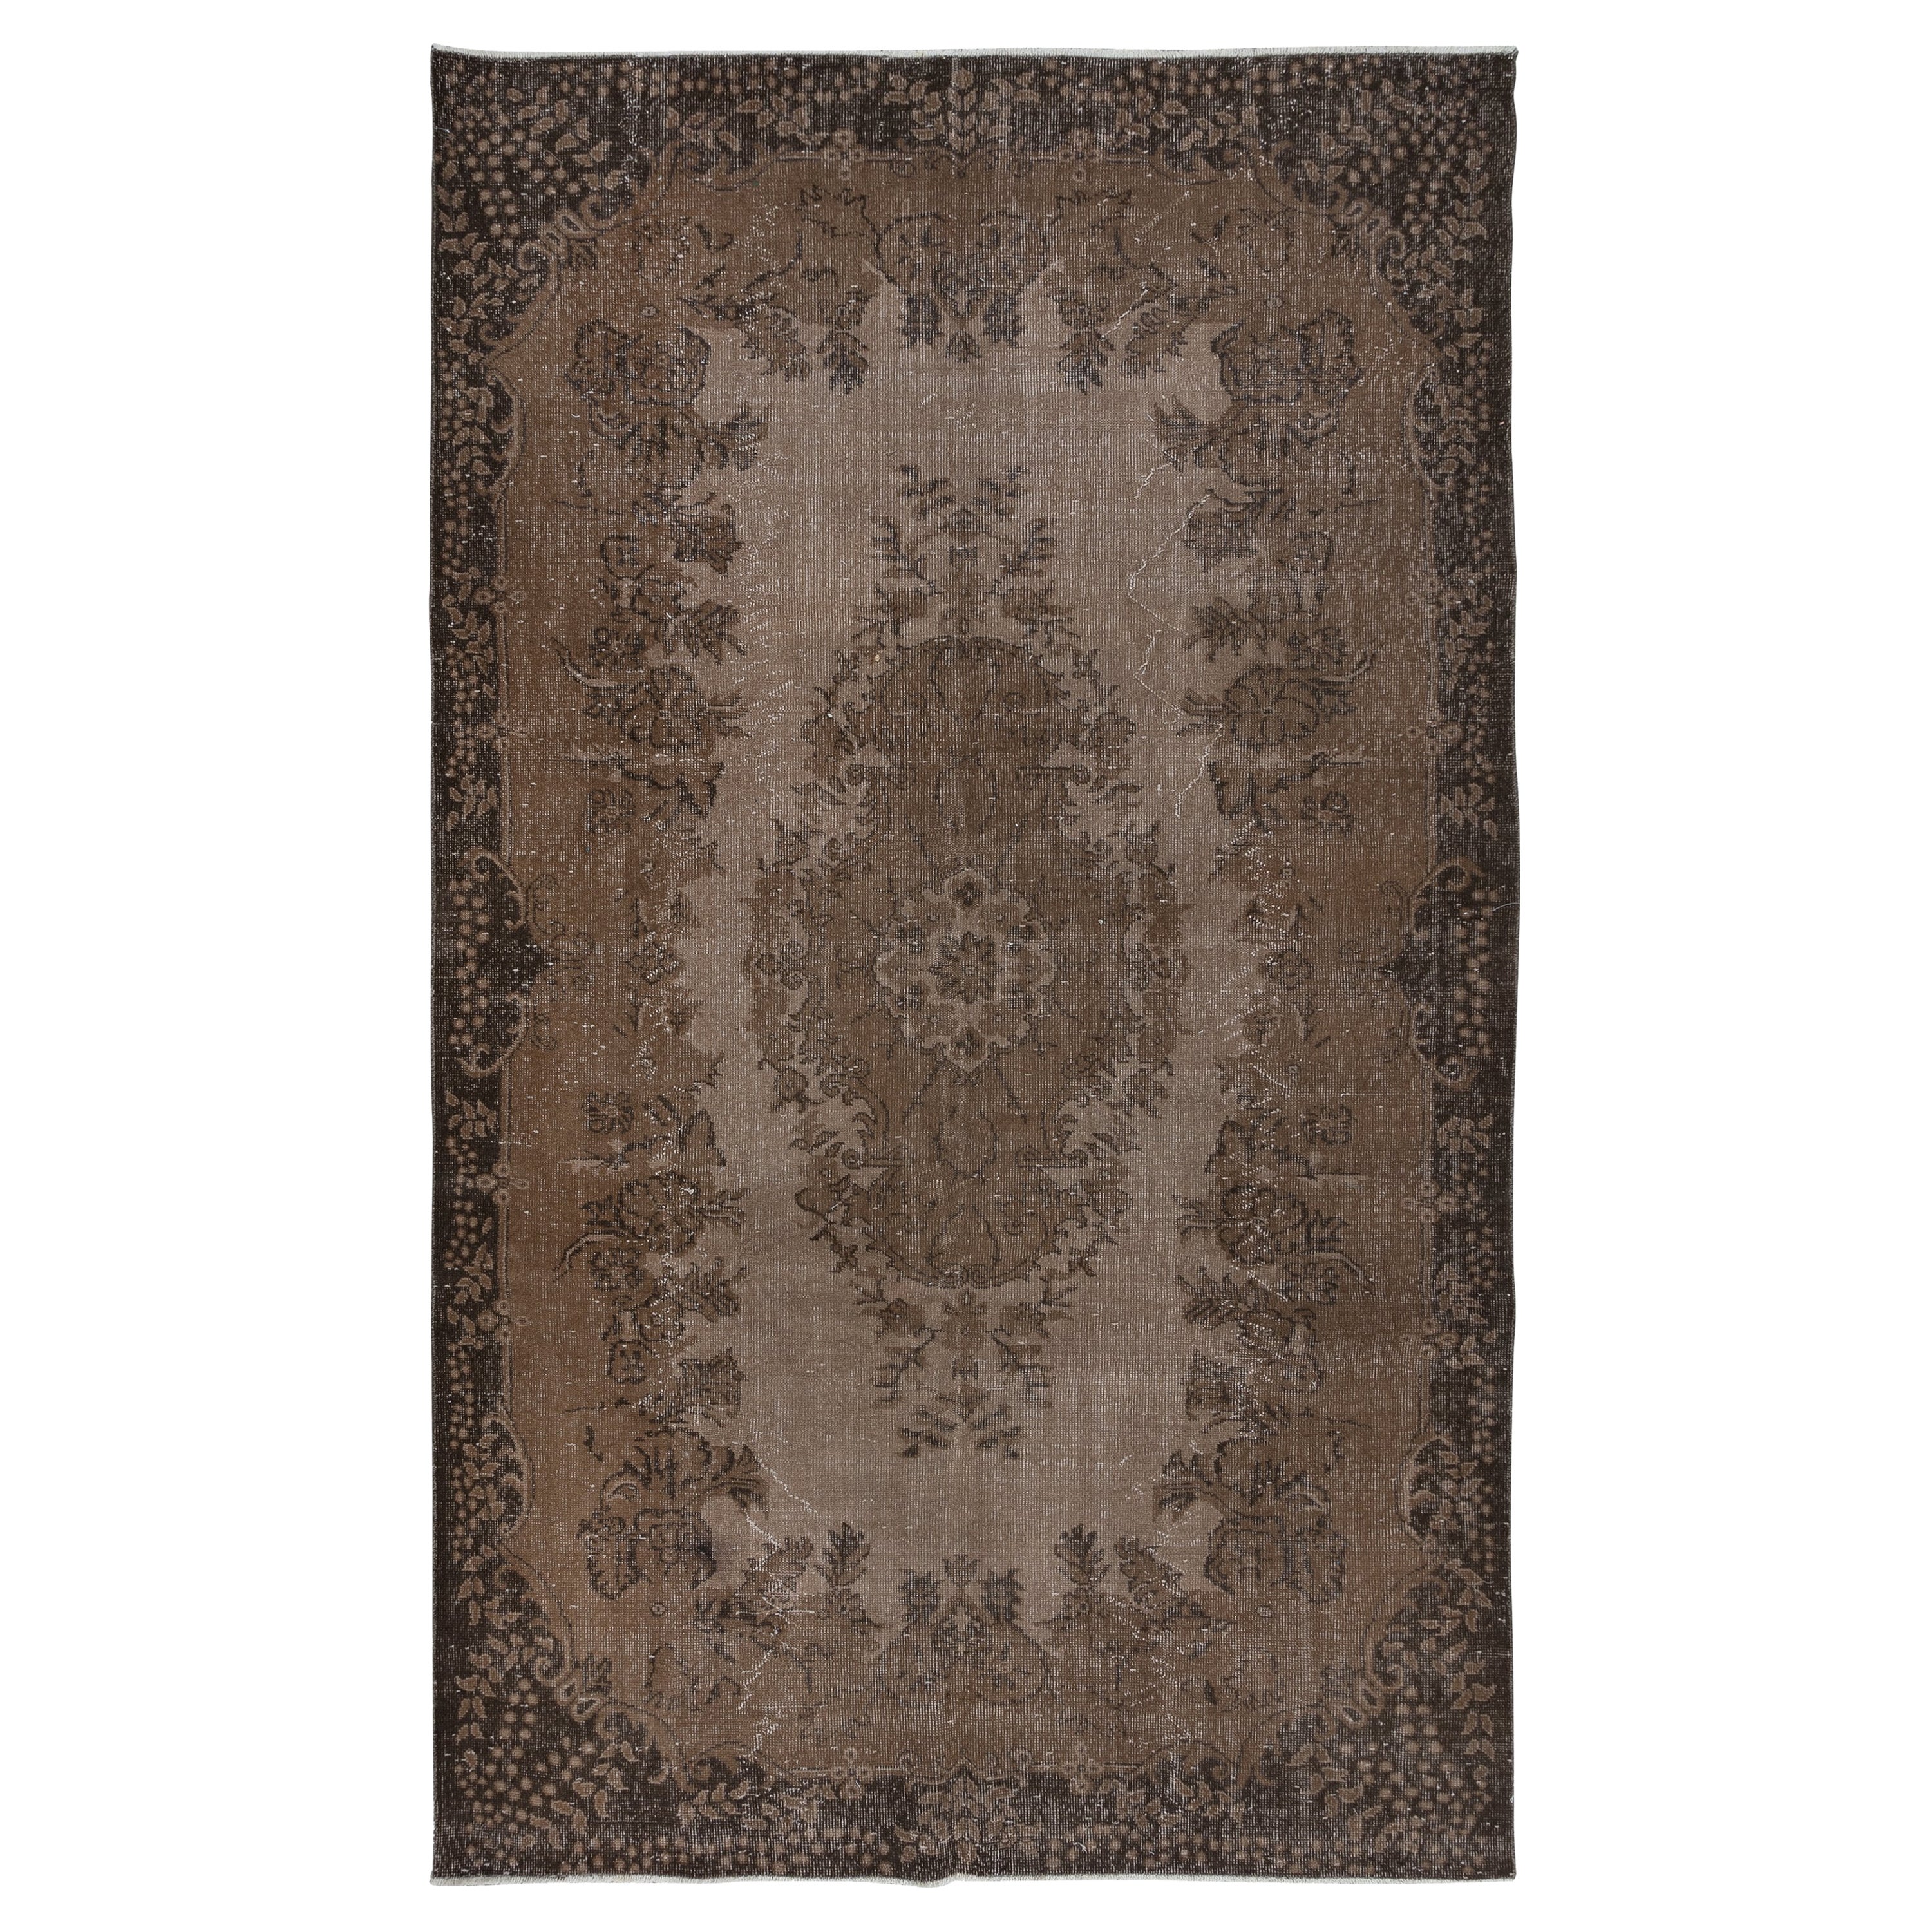 6x9.8 Ft Handmade Turkish Rug, Brown Medallion Design Carpet for Living Room (Tapis turc fait main, à motifs de médaillons, pour le salon)